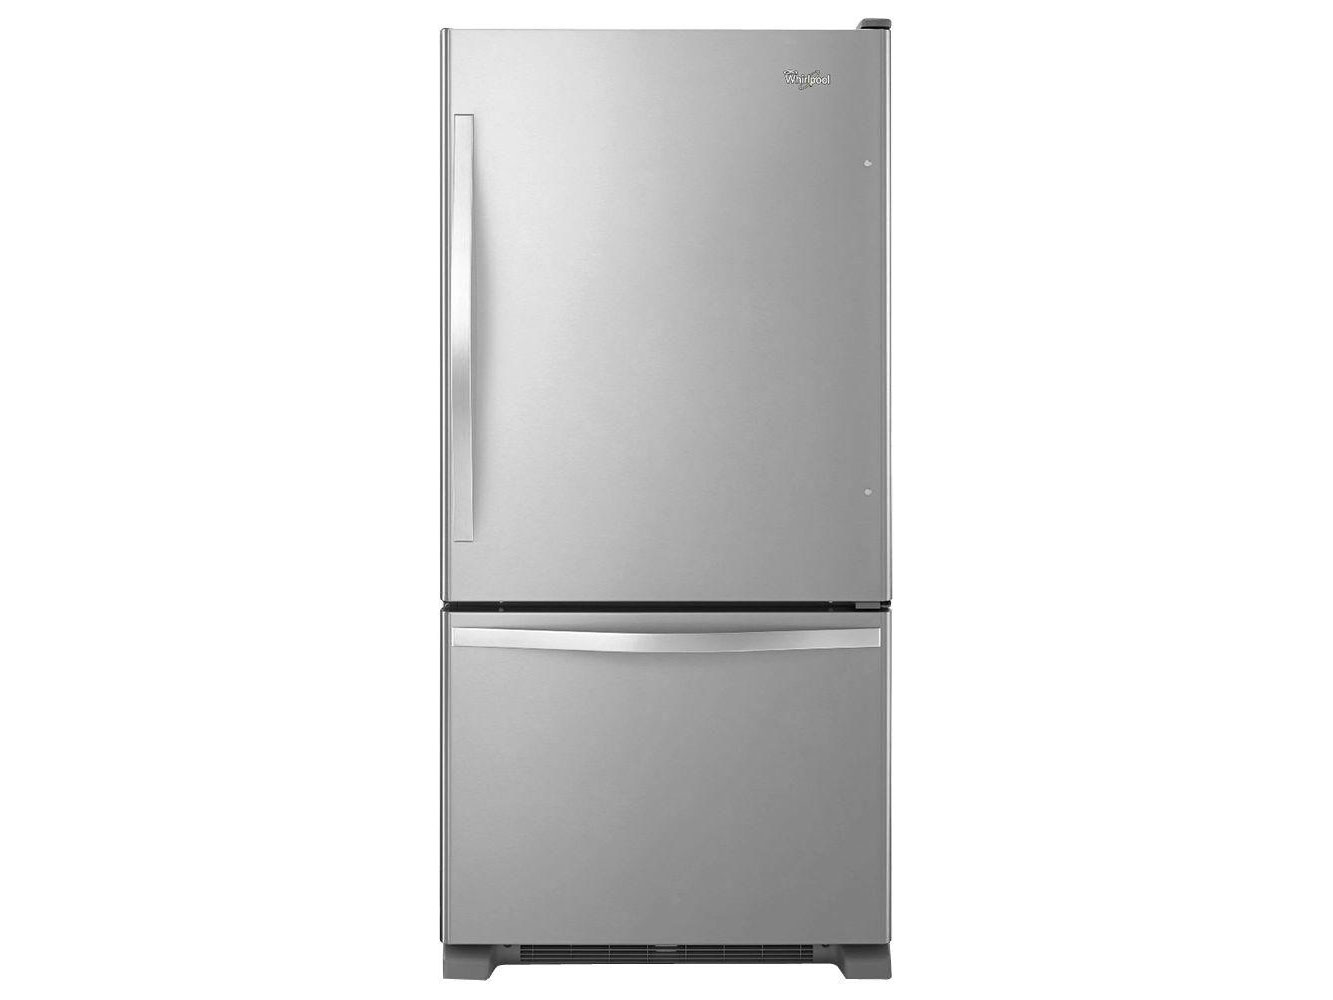 Bottom Freezer Refrigerator 220-240V 50HZ Whirlpool 5GBR22PRYA